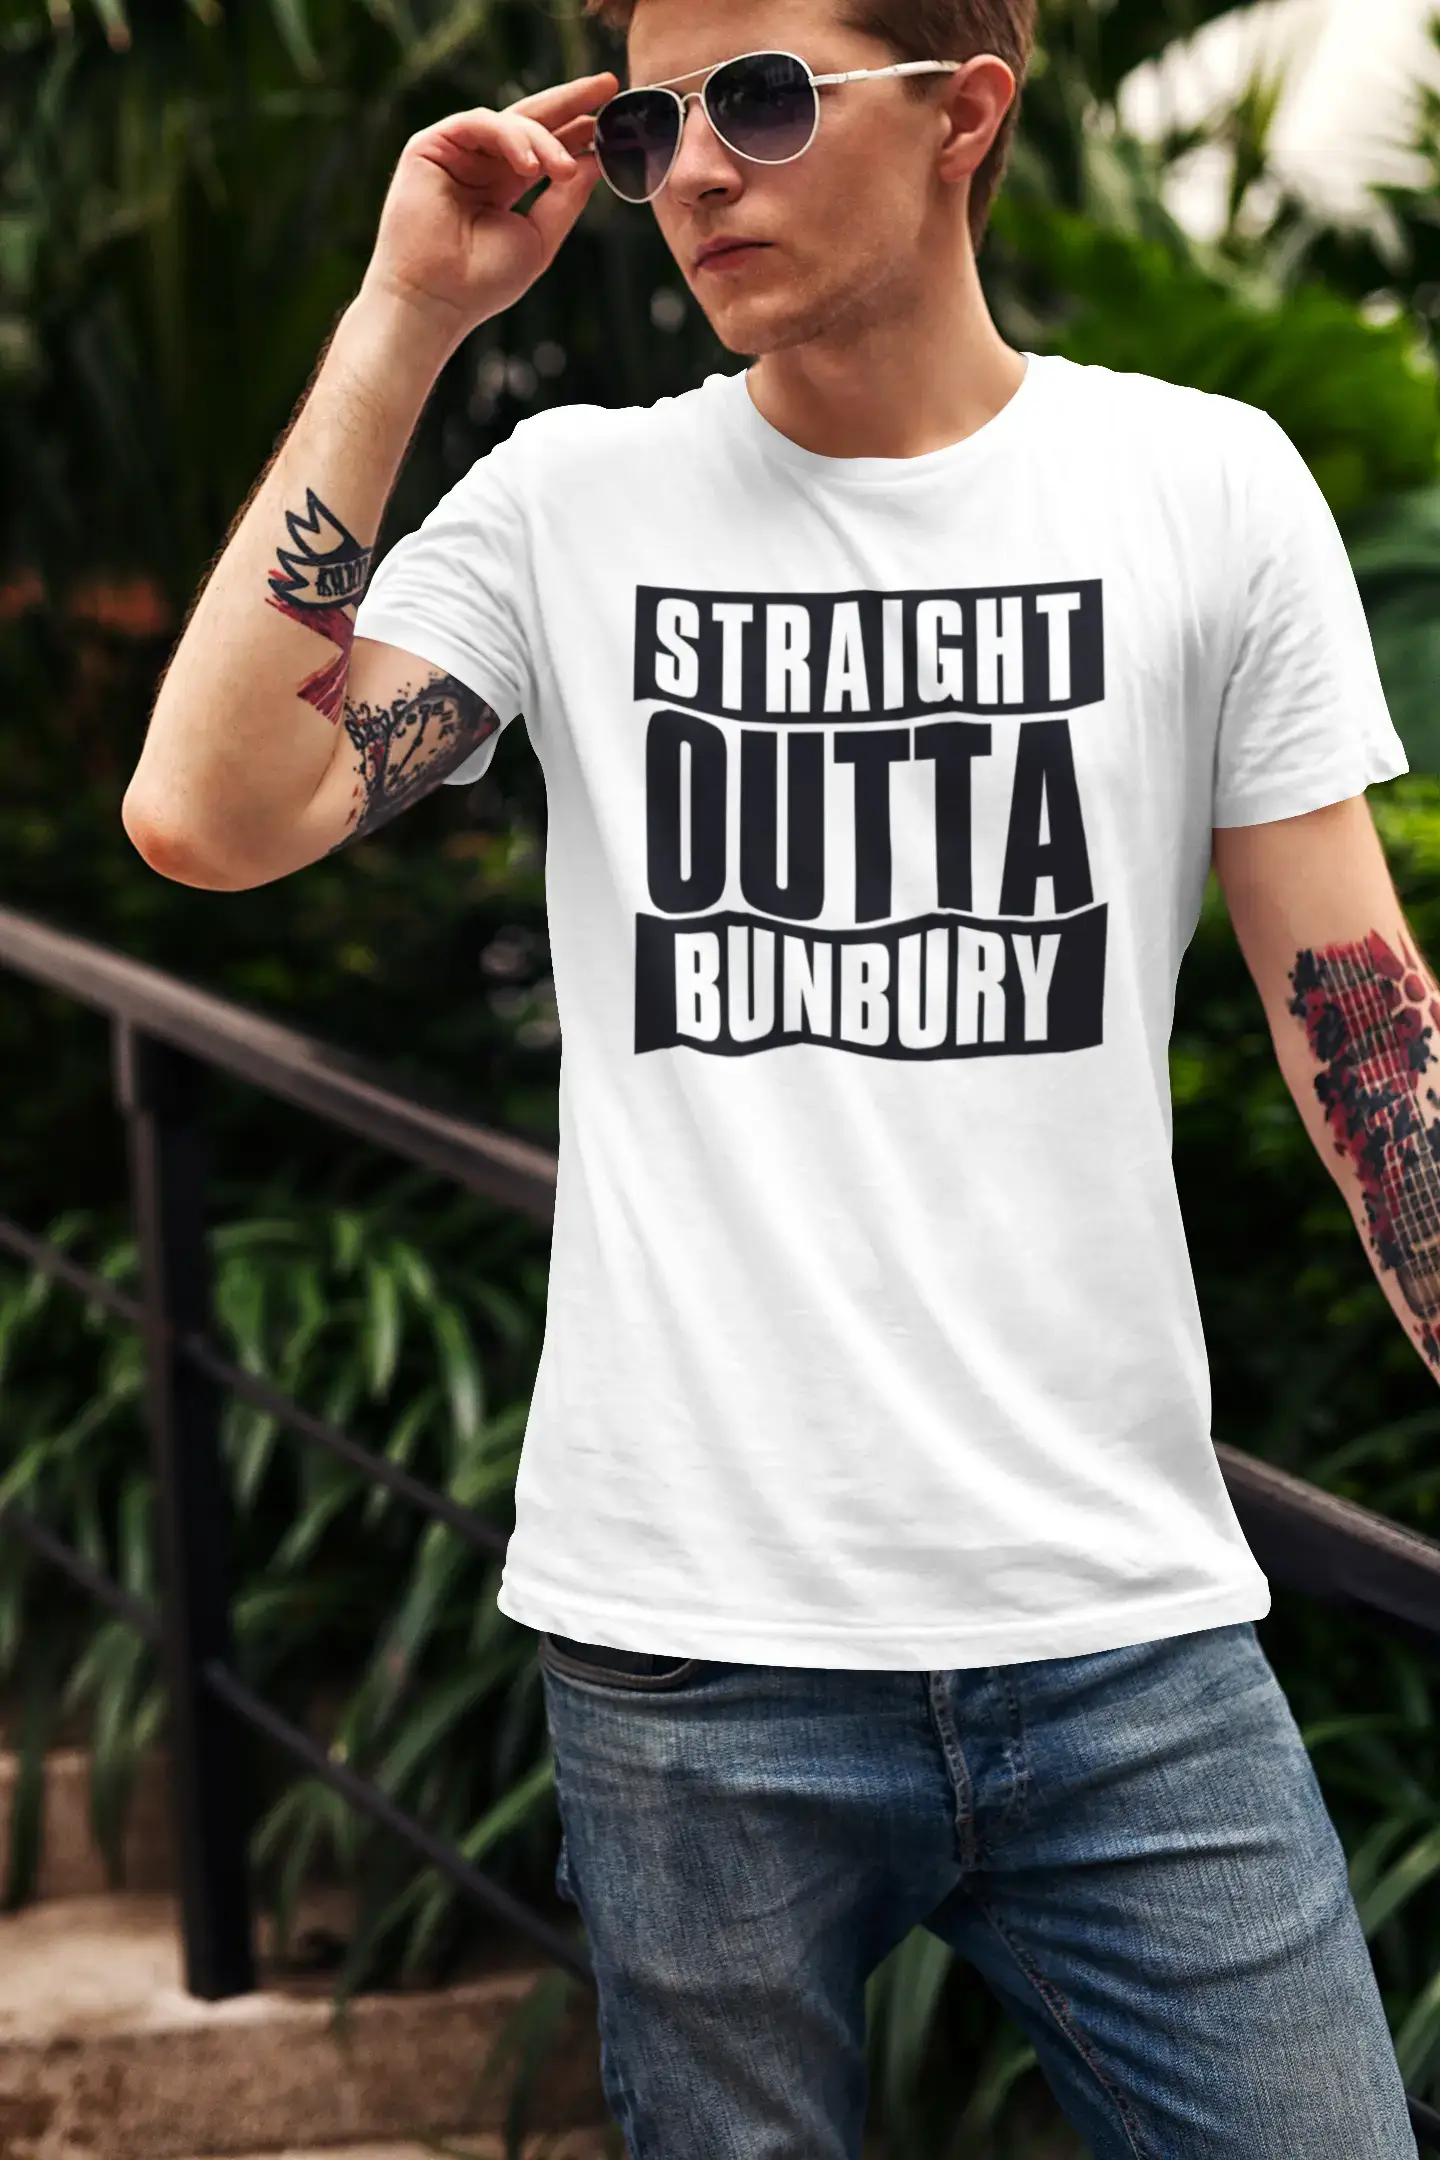 Straight Outta Bunbury, Men's Short Sleeve Round Neck T-shirt 00027